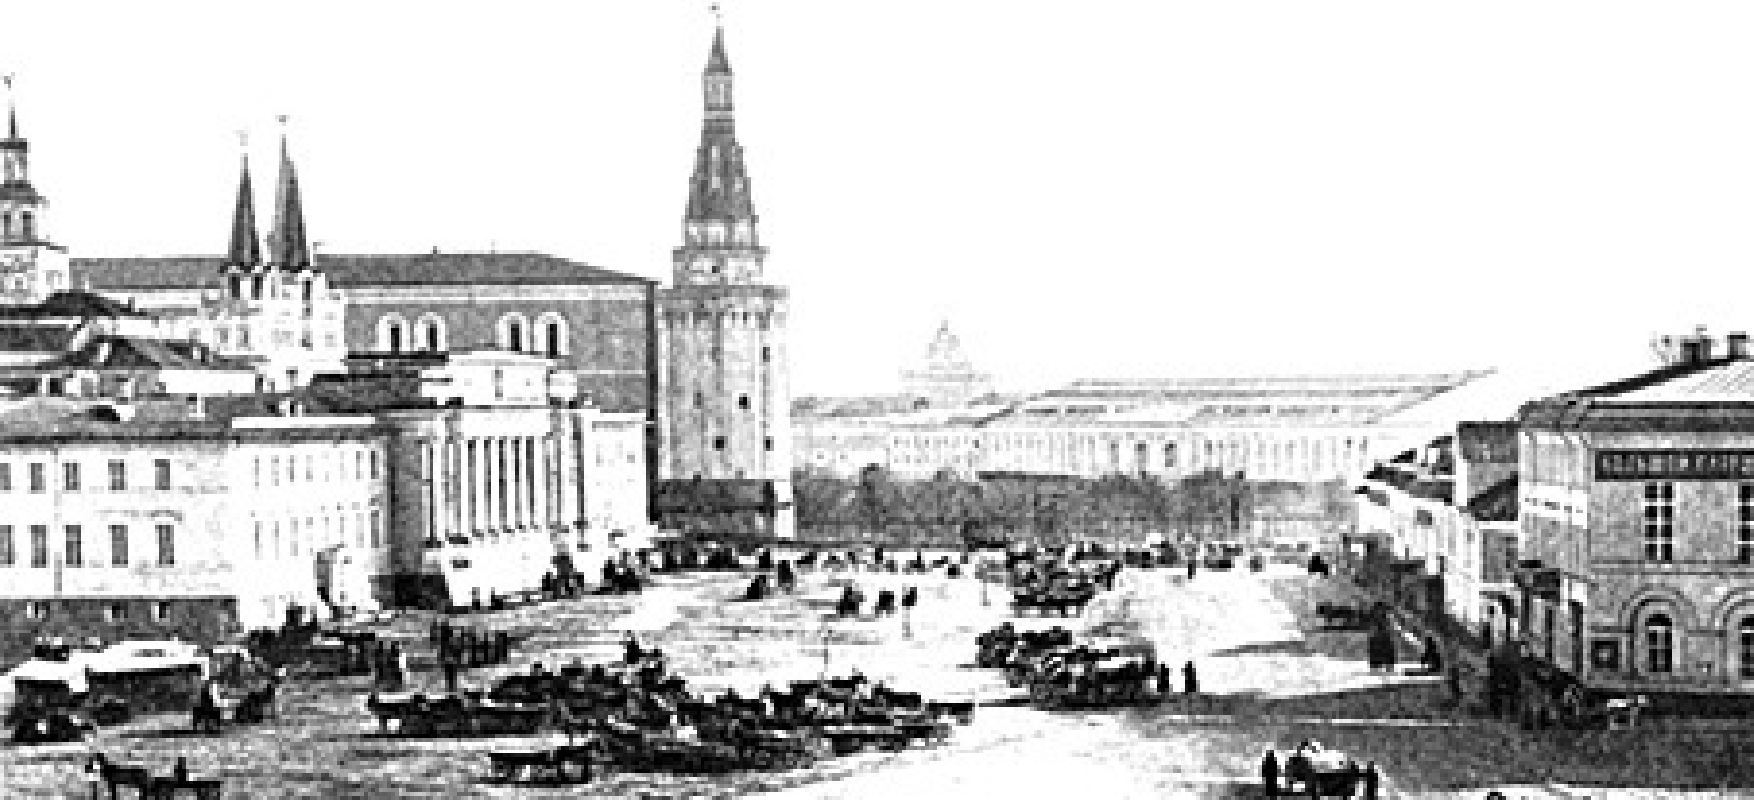 1877 г. Воскресенская площадь. Слева, на заднем плане — башня Кремля. Справа, на углу Воскресенской и Театральной площади — трактир Патрикеева